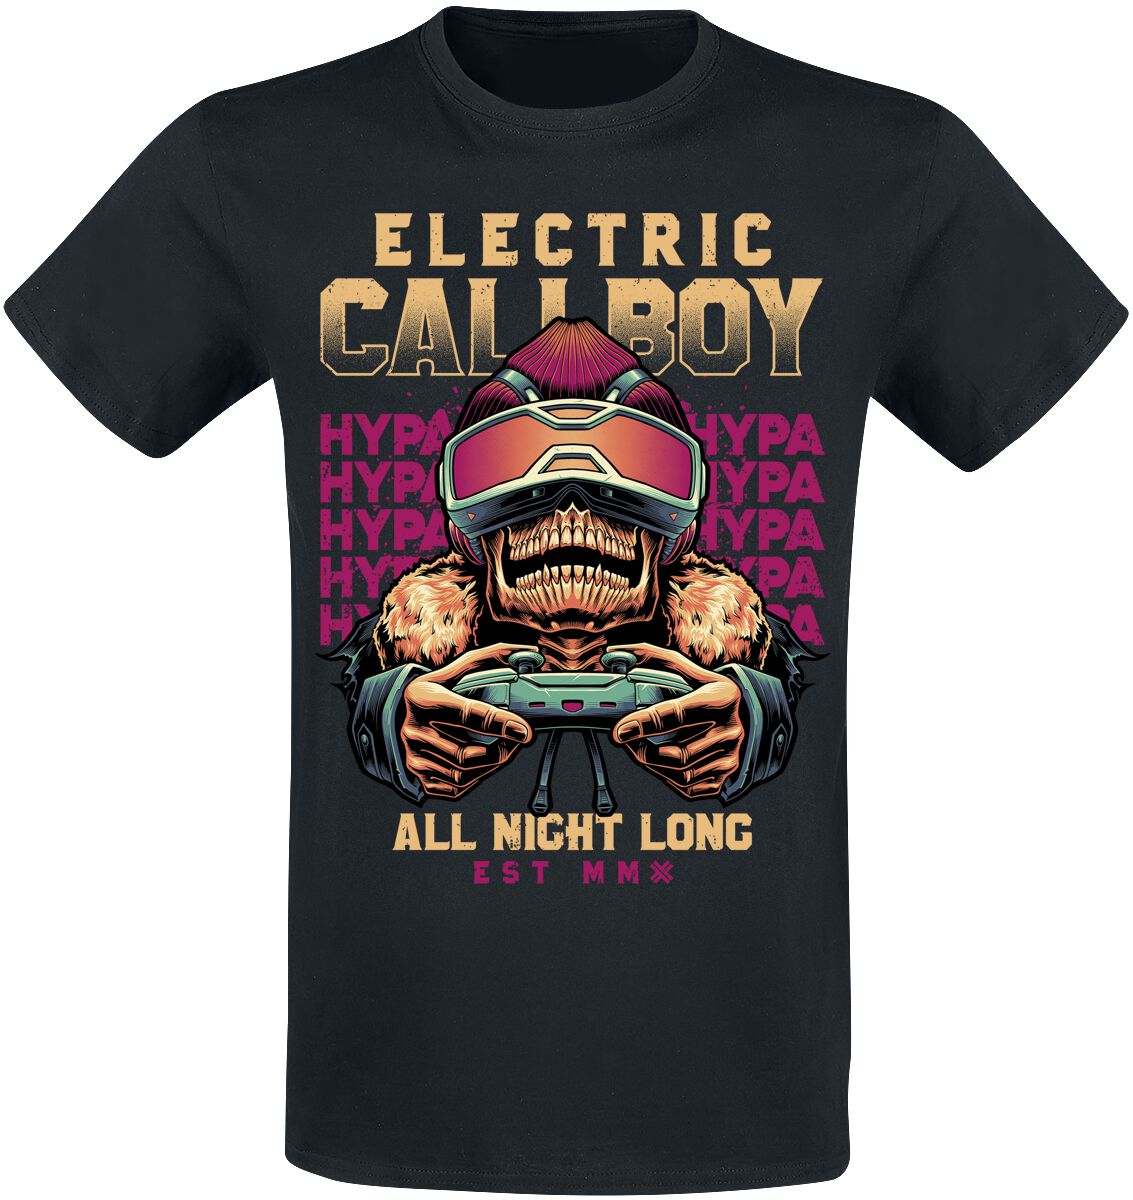 Electric Callboy T-Shirt - All Night Long - S bis 3XL - für Männer - Größe S - schwarz  - EMP exklusives Merchandise!